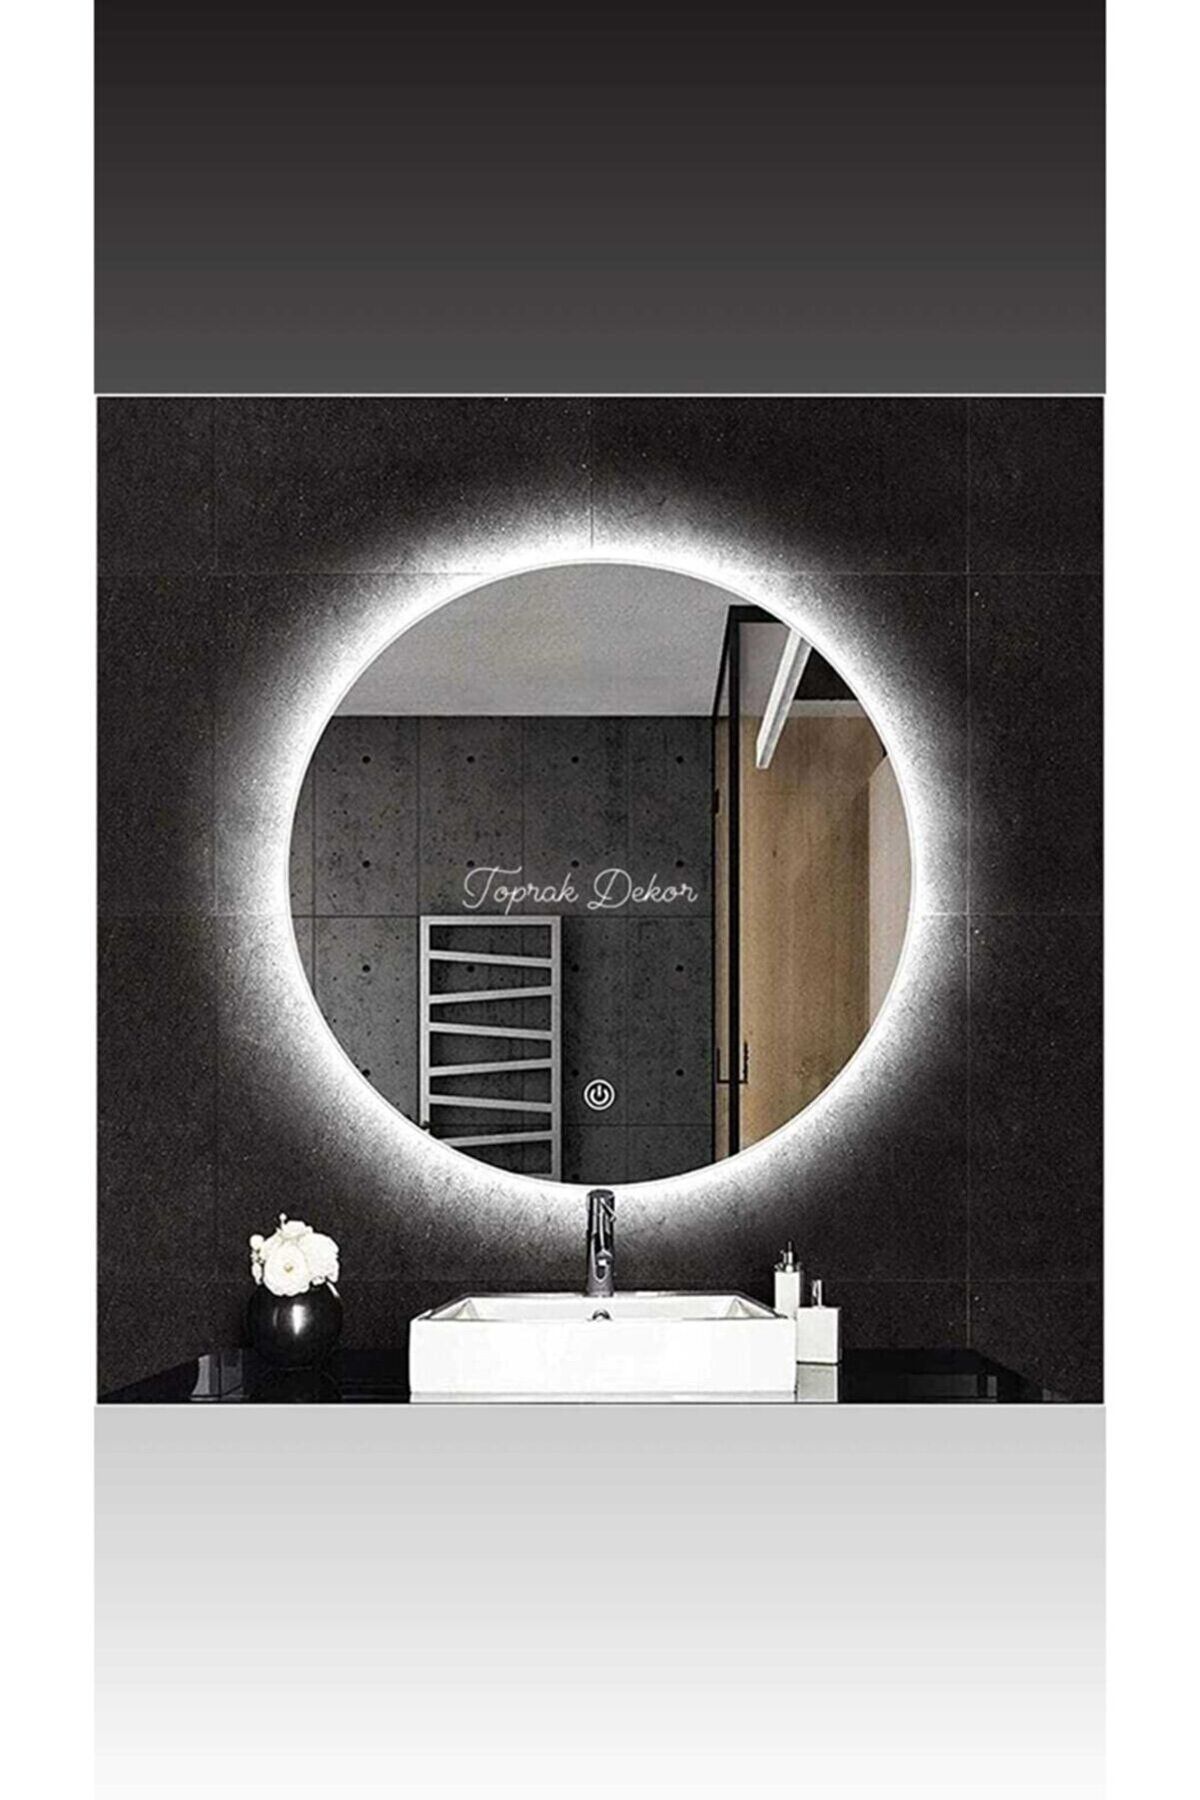 Toprak dekor 50 Dokunmatik (DİMMER ÖZELLİKLİ) Beyaz Ledli Ledli Ayna Banyo Aynası Işıklı Ayna Tuvalet Aynası